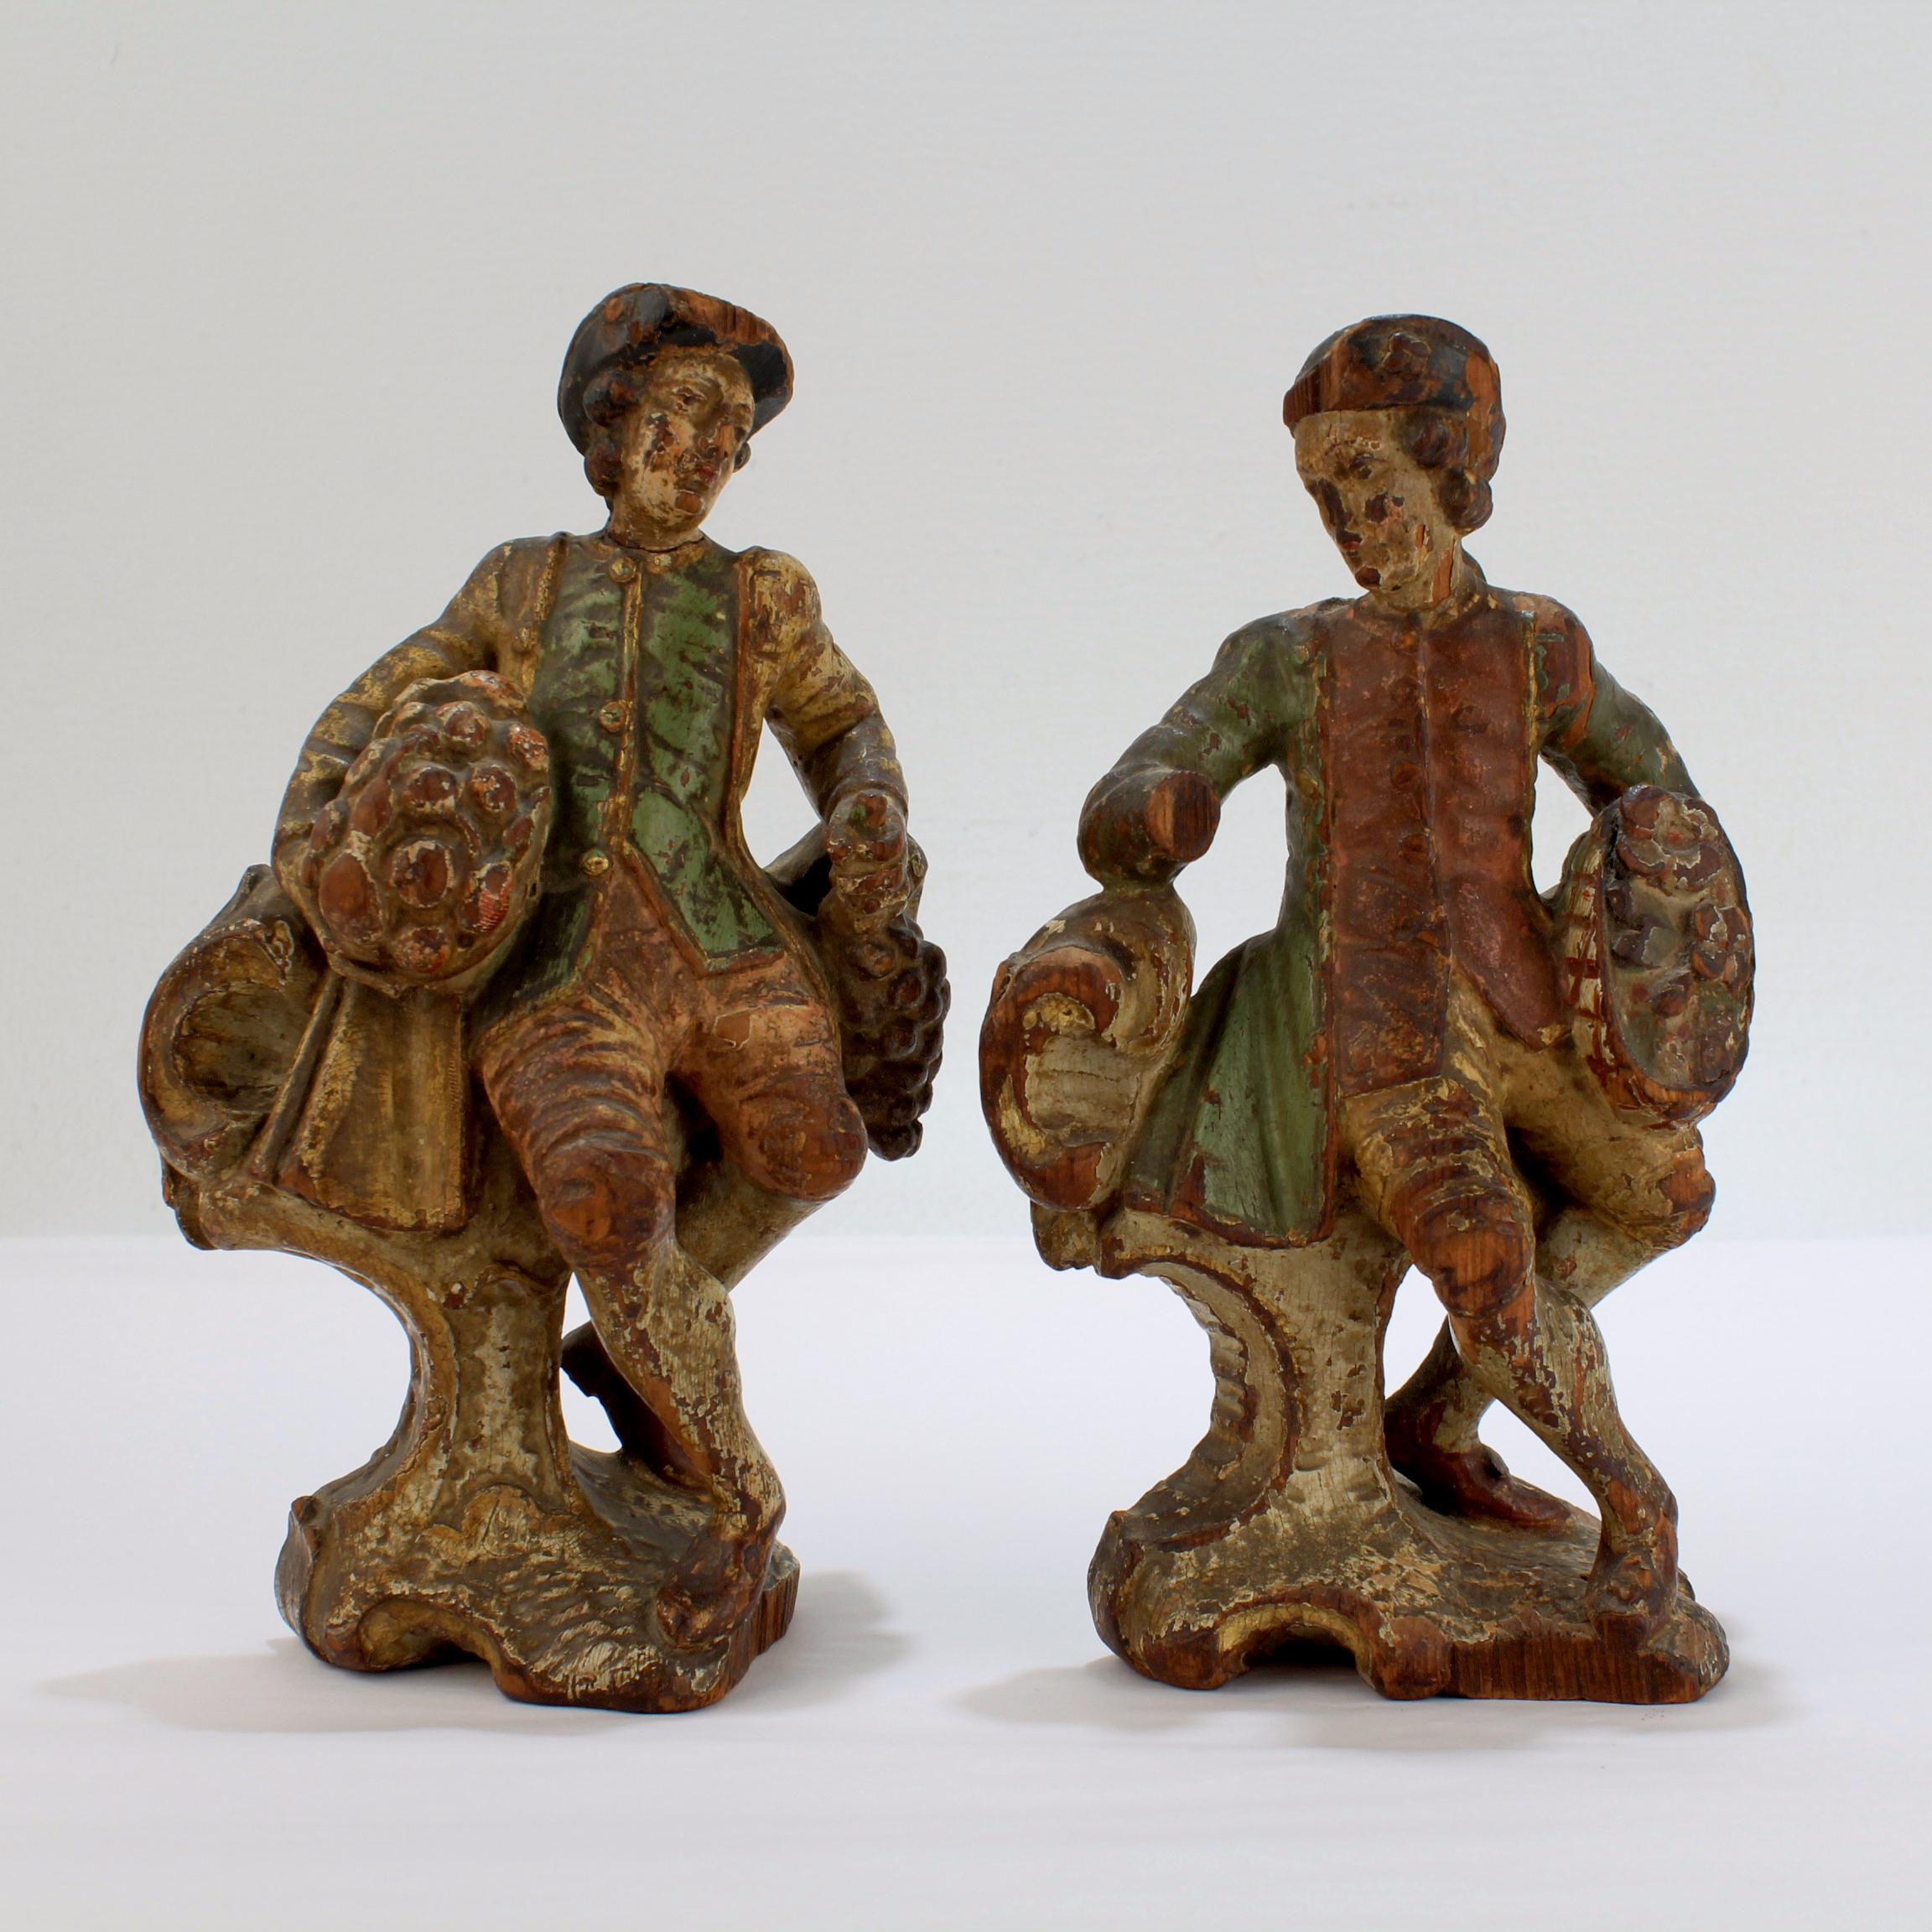 Ein Paar geschnitzte Holzfiguren aus dem 18.

Wahrscheinlich aus Mitteleuropa, irgendwo in Deutschland, Österreich, der Schweiz oder Norditalien. 

Beide Figuren stellen einen galanten Herrn in zeitgenössischer Kleidung dar, der einen Korb mit